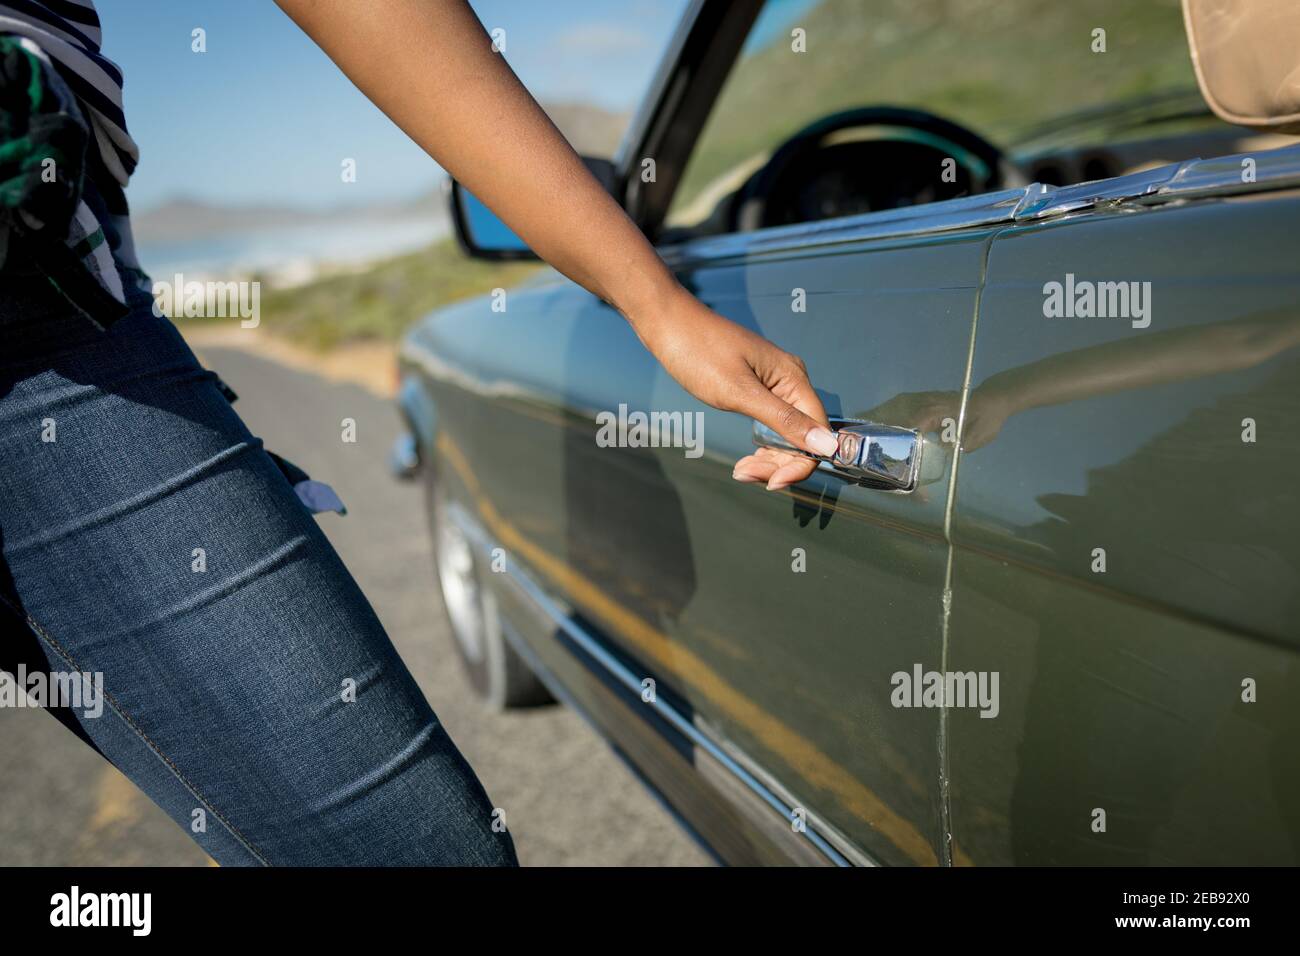 Misto gara donna in giornata di sole che entra nella vettura convertibile Foto Stock